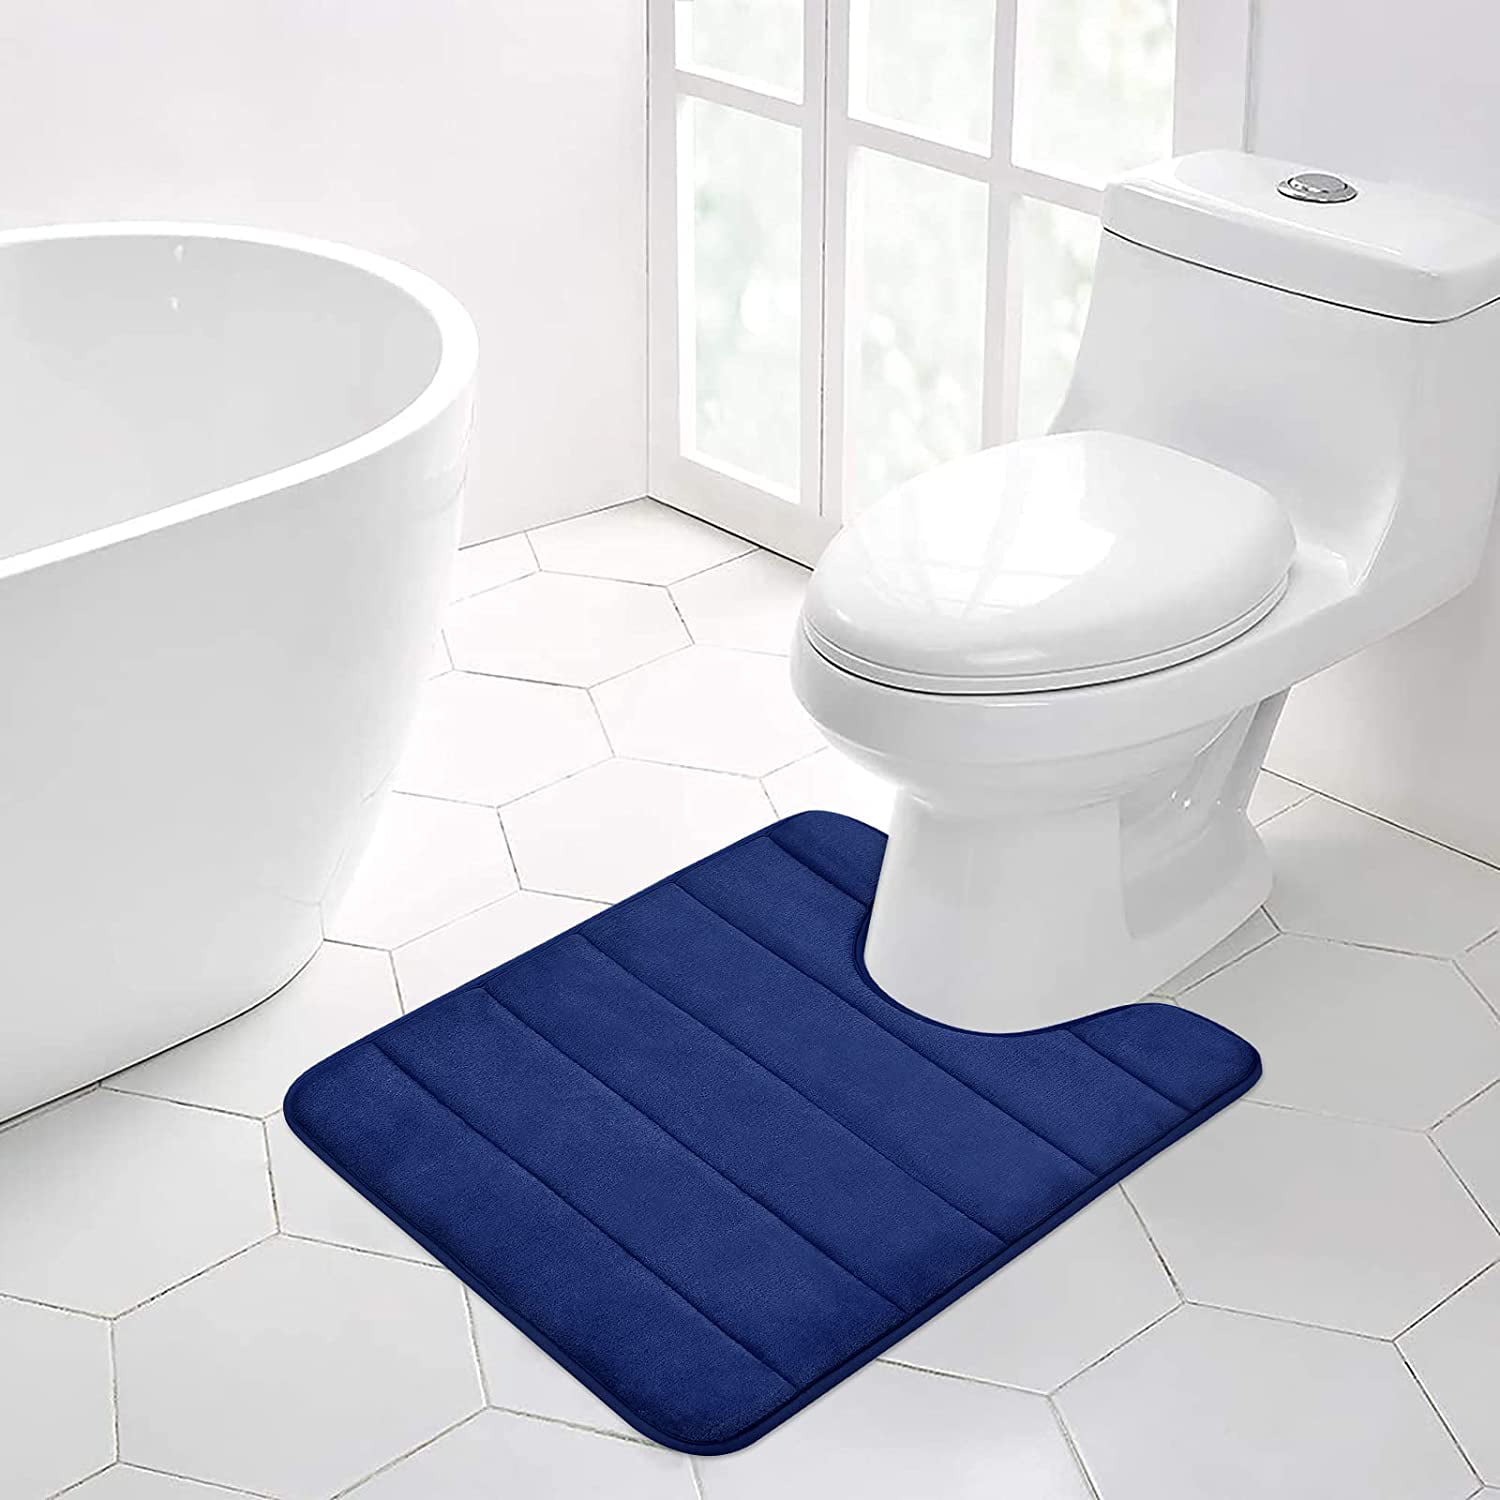 Details about   3 Piece Soft Bathroom Mat Contour Rug Set Toilet Lid Cover Plain Color Bathmats 